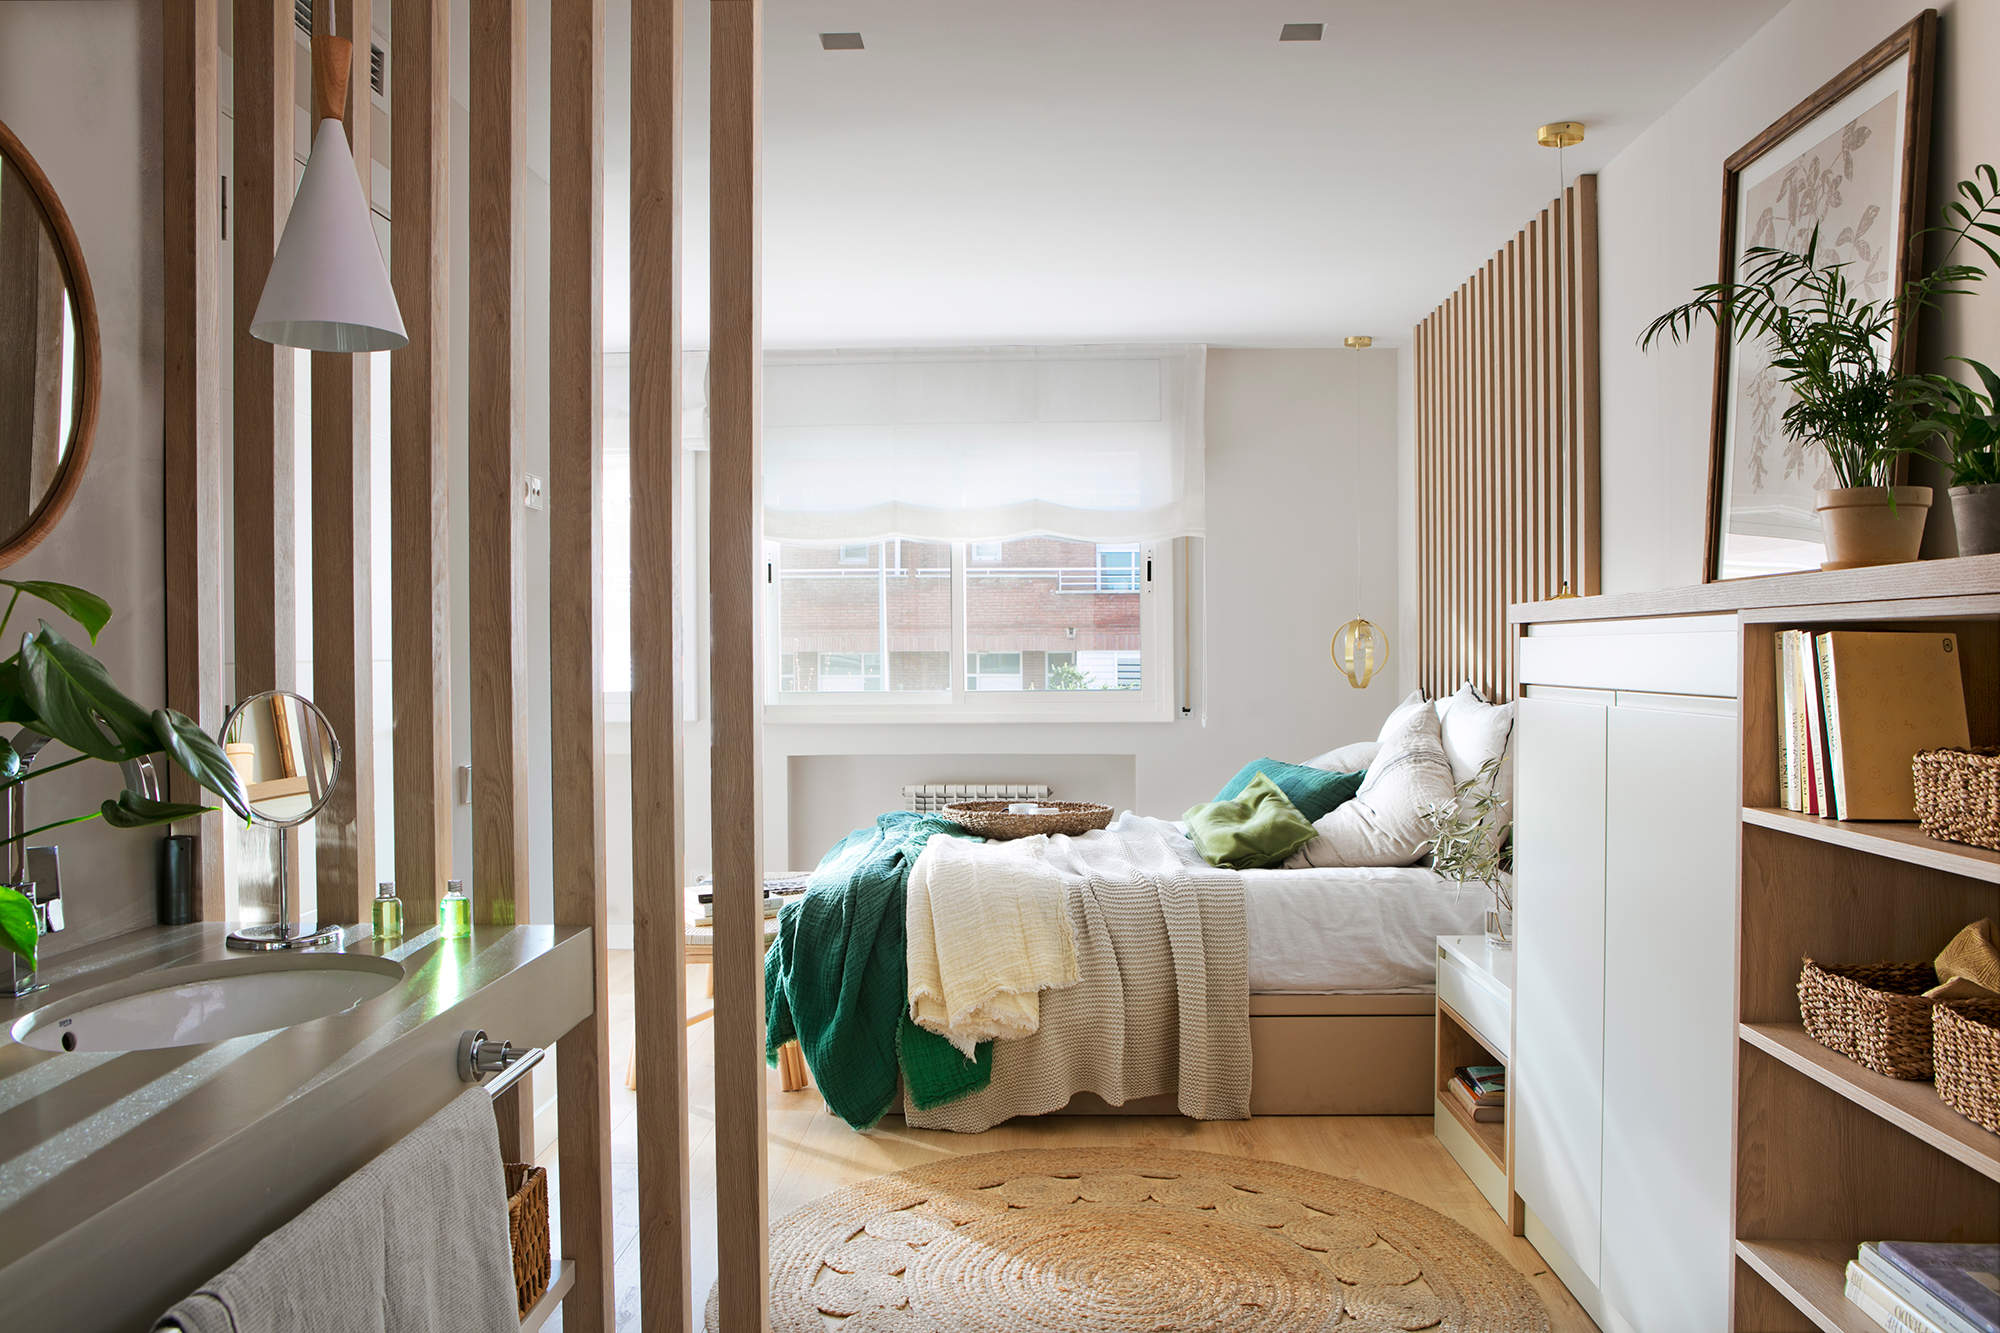 Dormitorio con panel decorativo de listones de madera como separación en el baño.